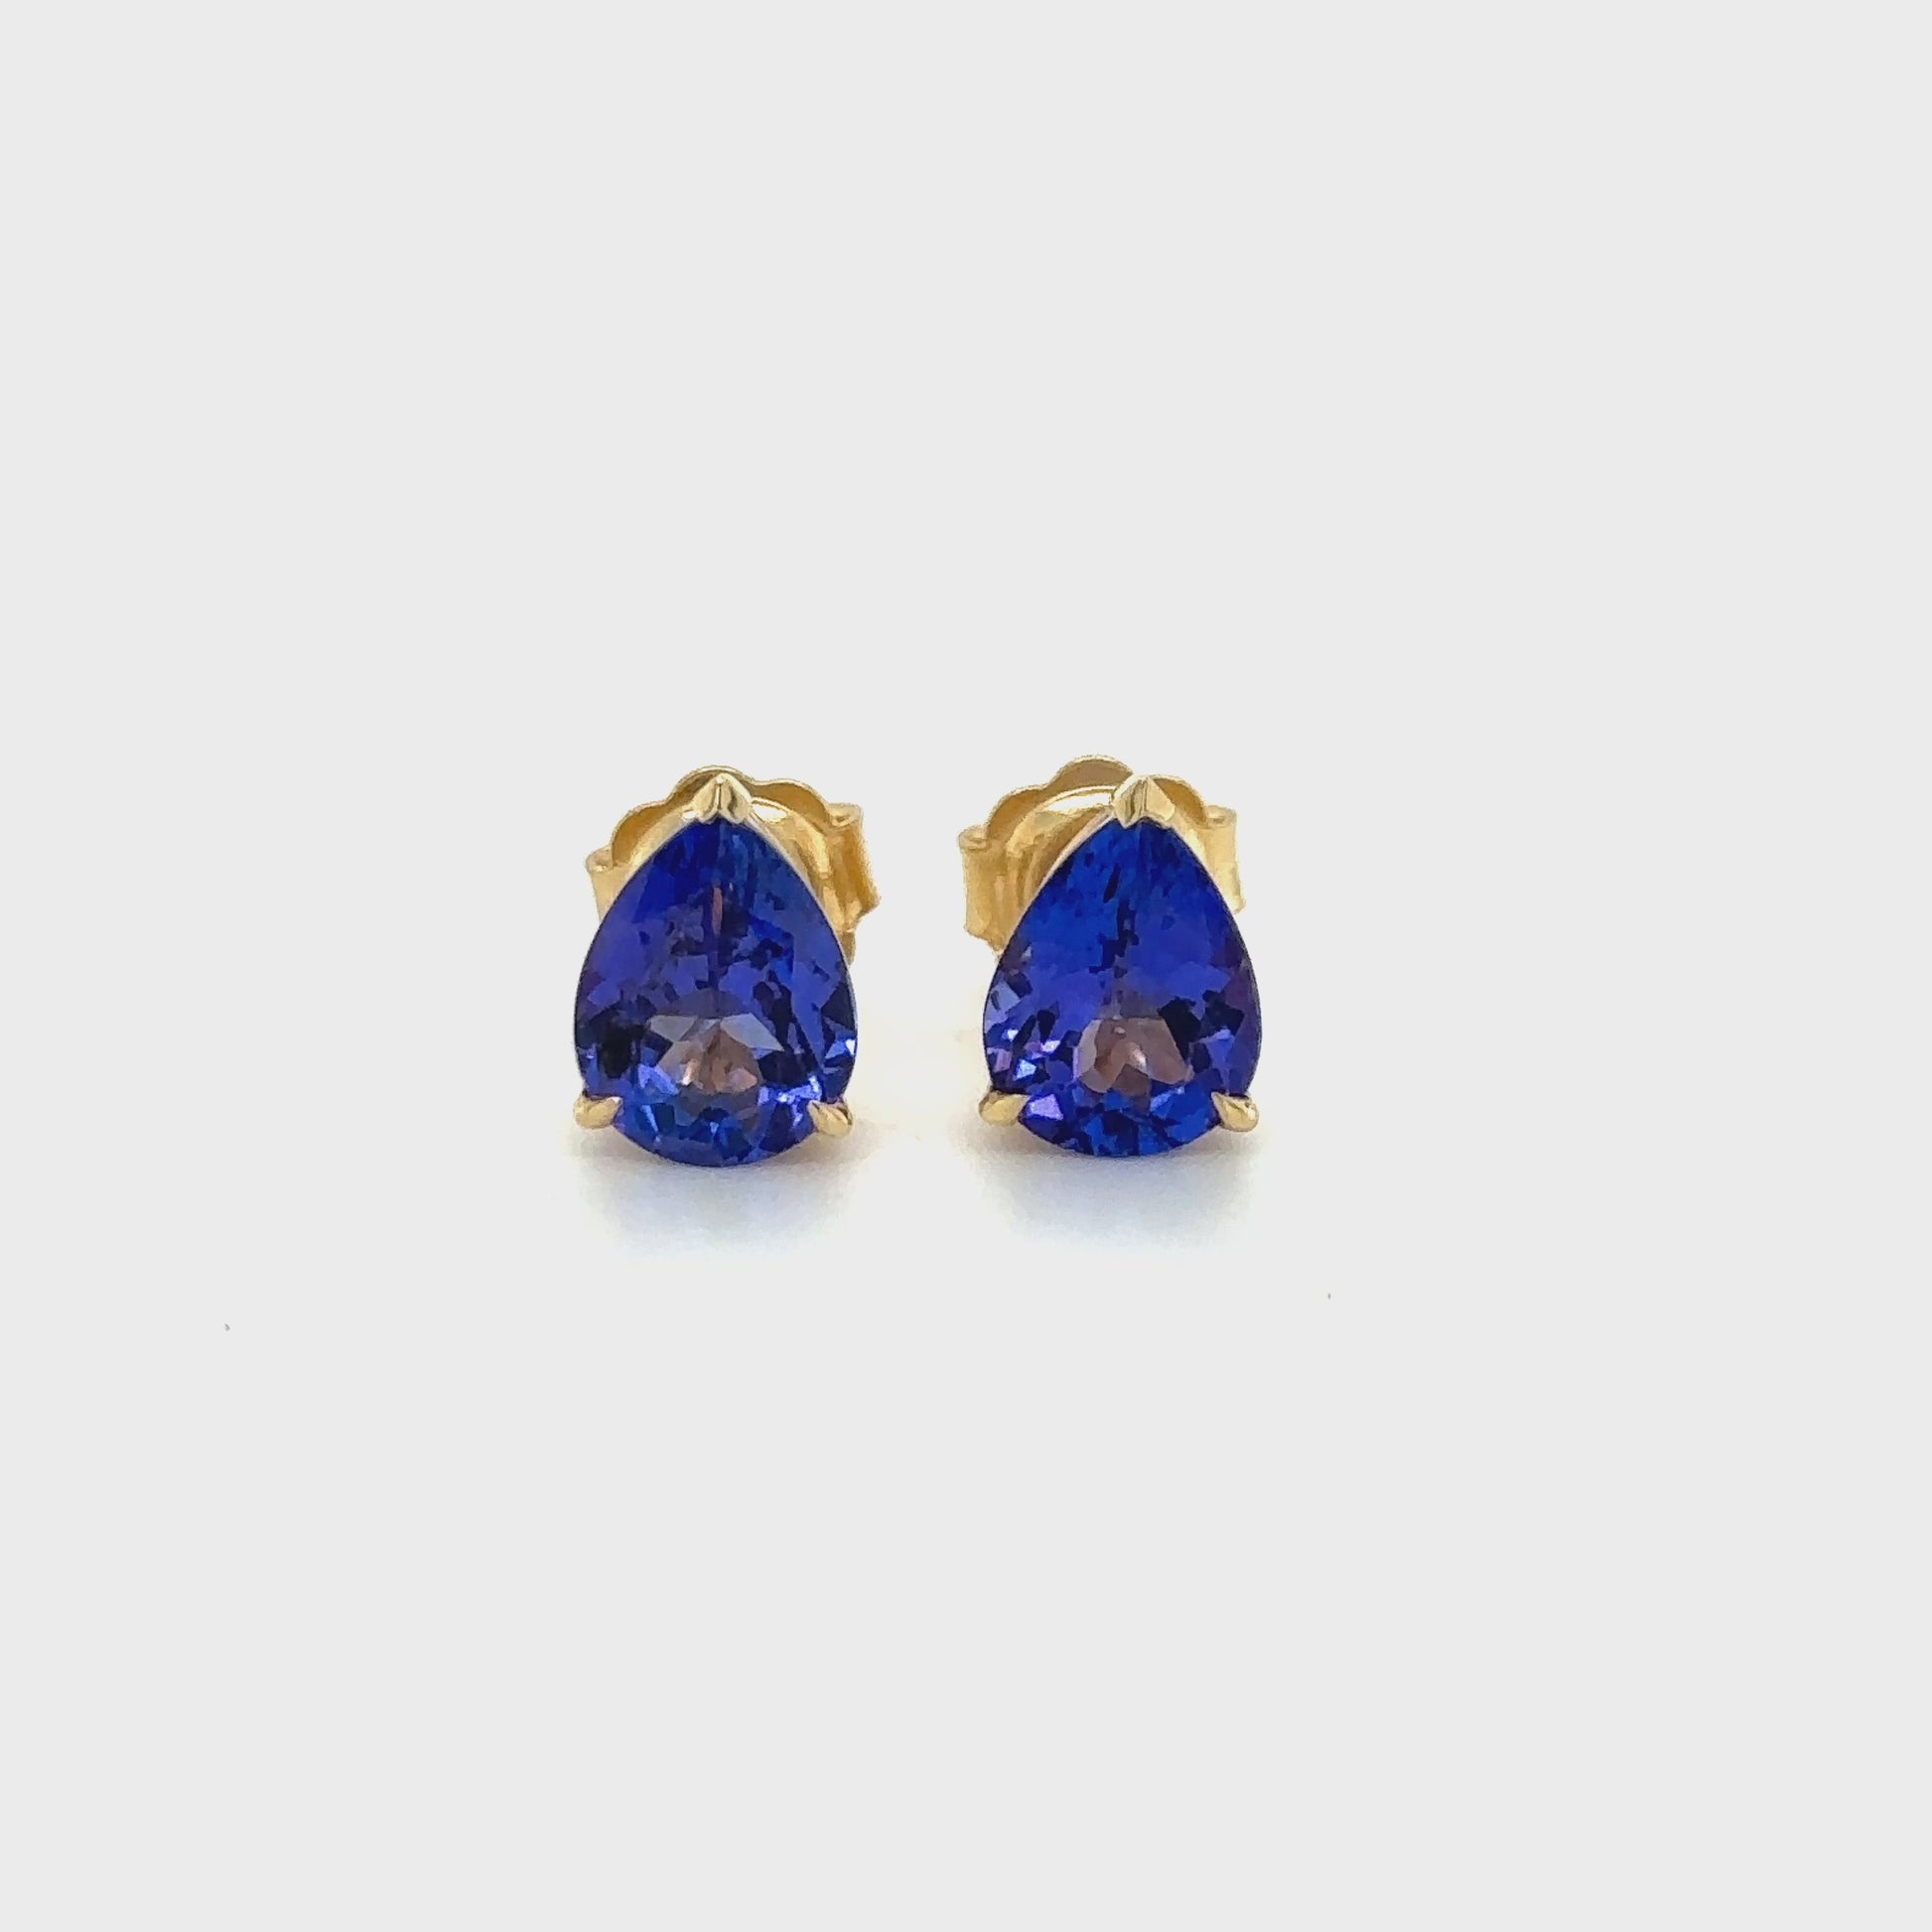 "Pear-shaped tanzanite earrings, Tanzanite stud earrings, Pear earrings, Tanzanite jewelry, Stud earrings, Gemstone earrings, Blue gemstone earrings, Elegant earrings, Classic earrings, Fine jewelry"